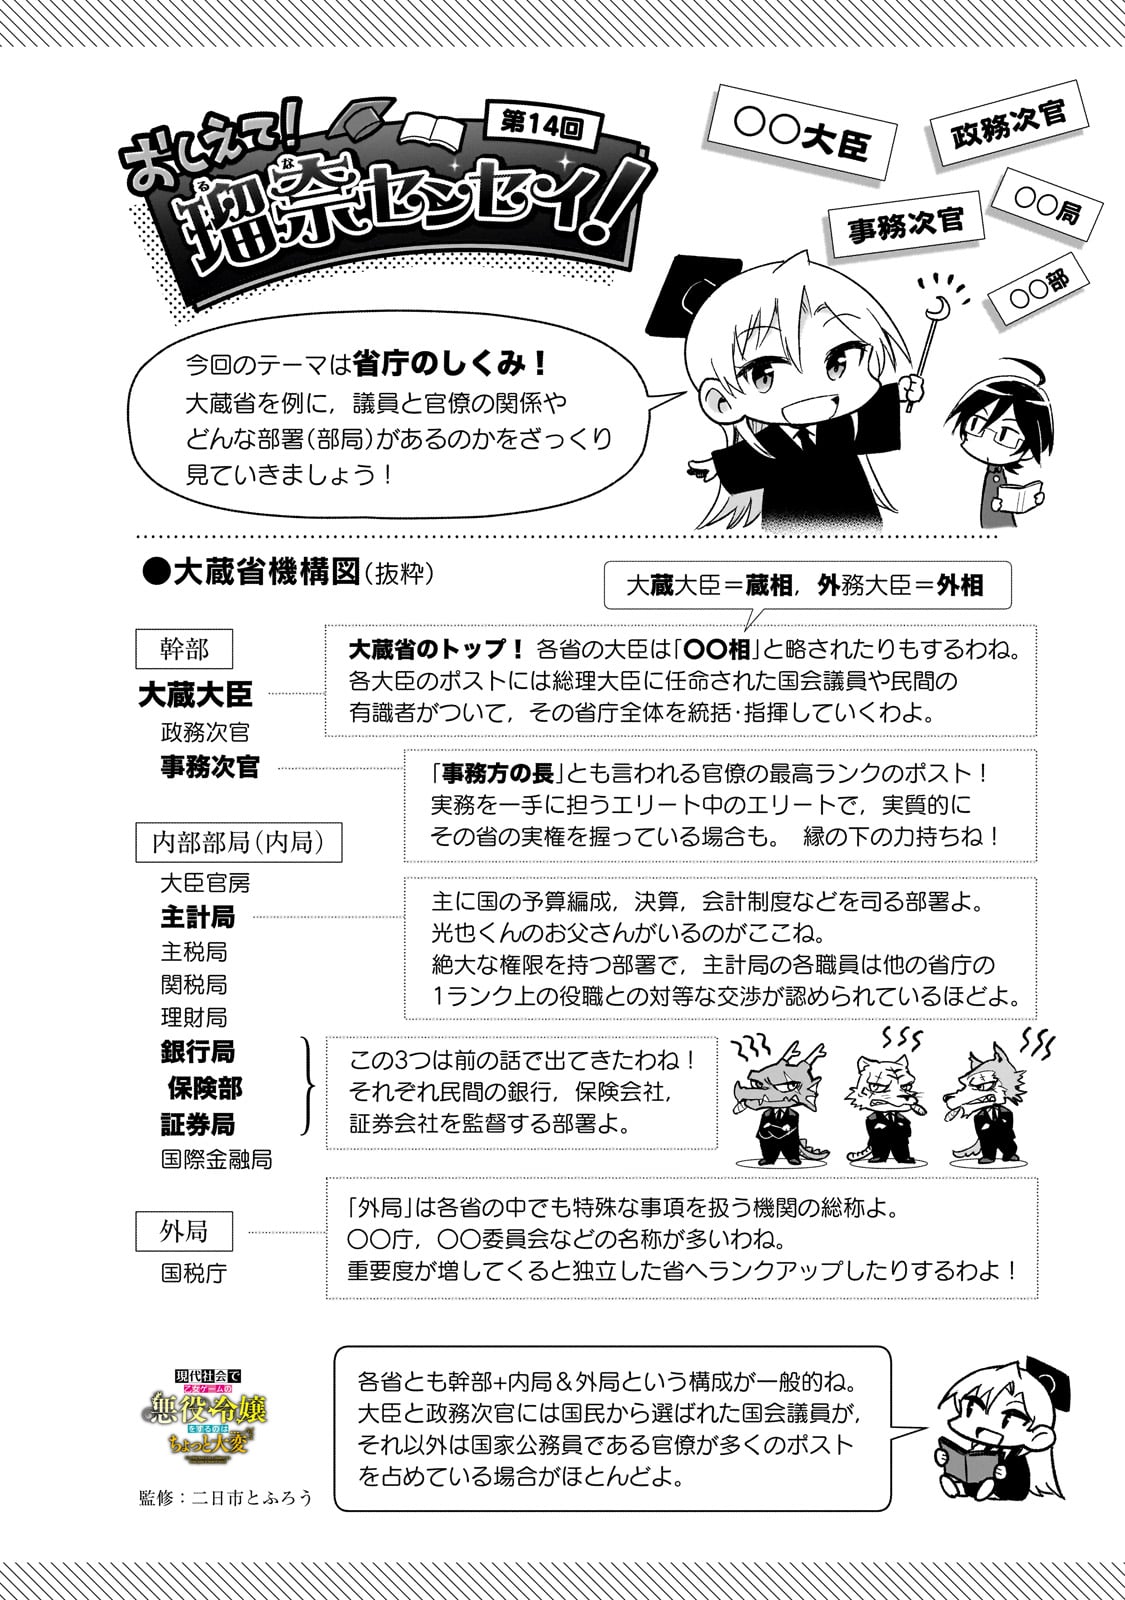 Gendai Shakai de Otome Game no Akuyaku Reijou wo suru no wa Chotto Taihen - Chapter 14 - Page 24